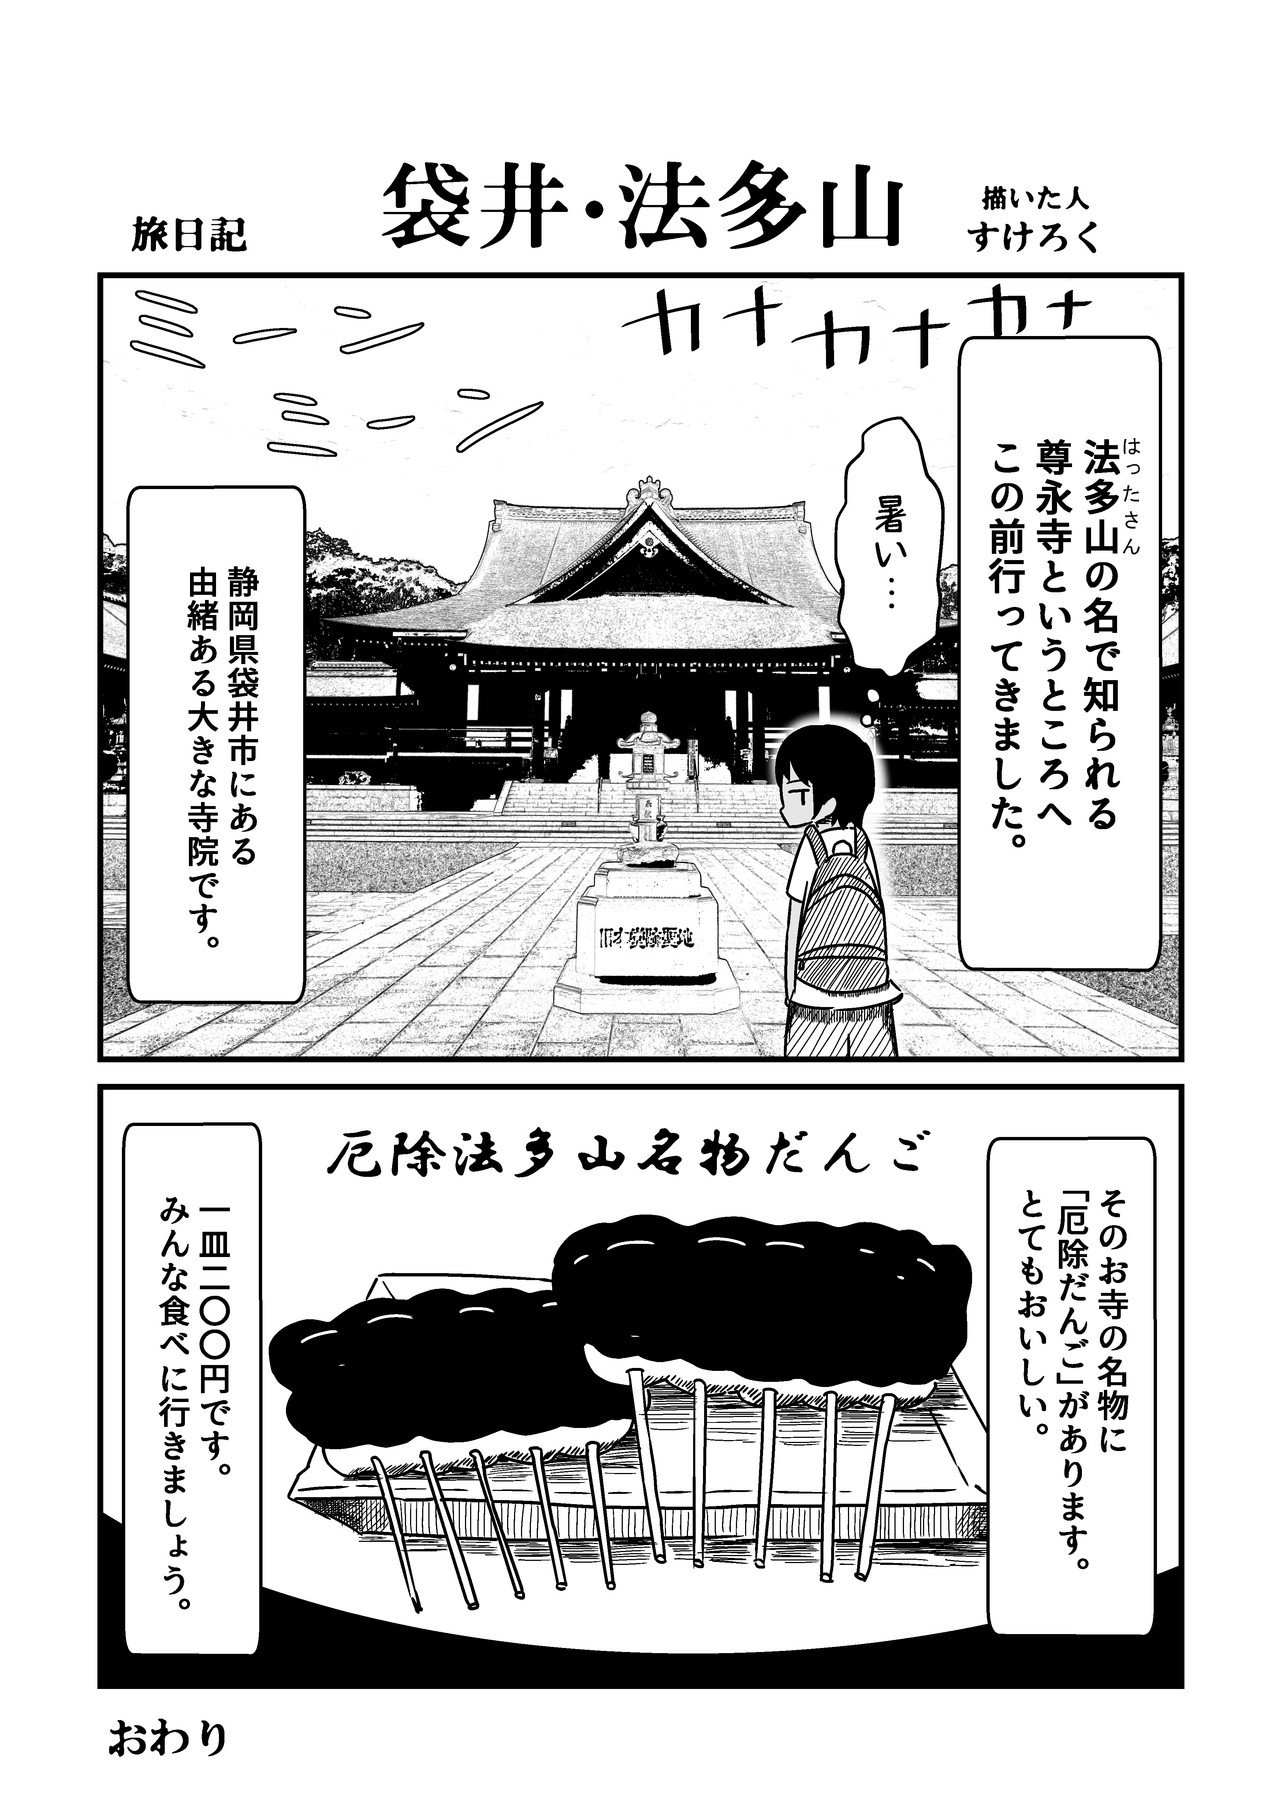 2018.8.26_旅漫画_袋井